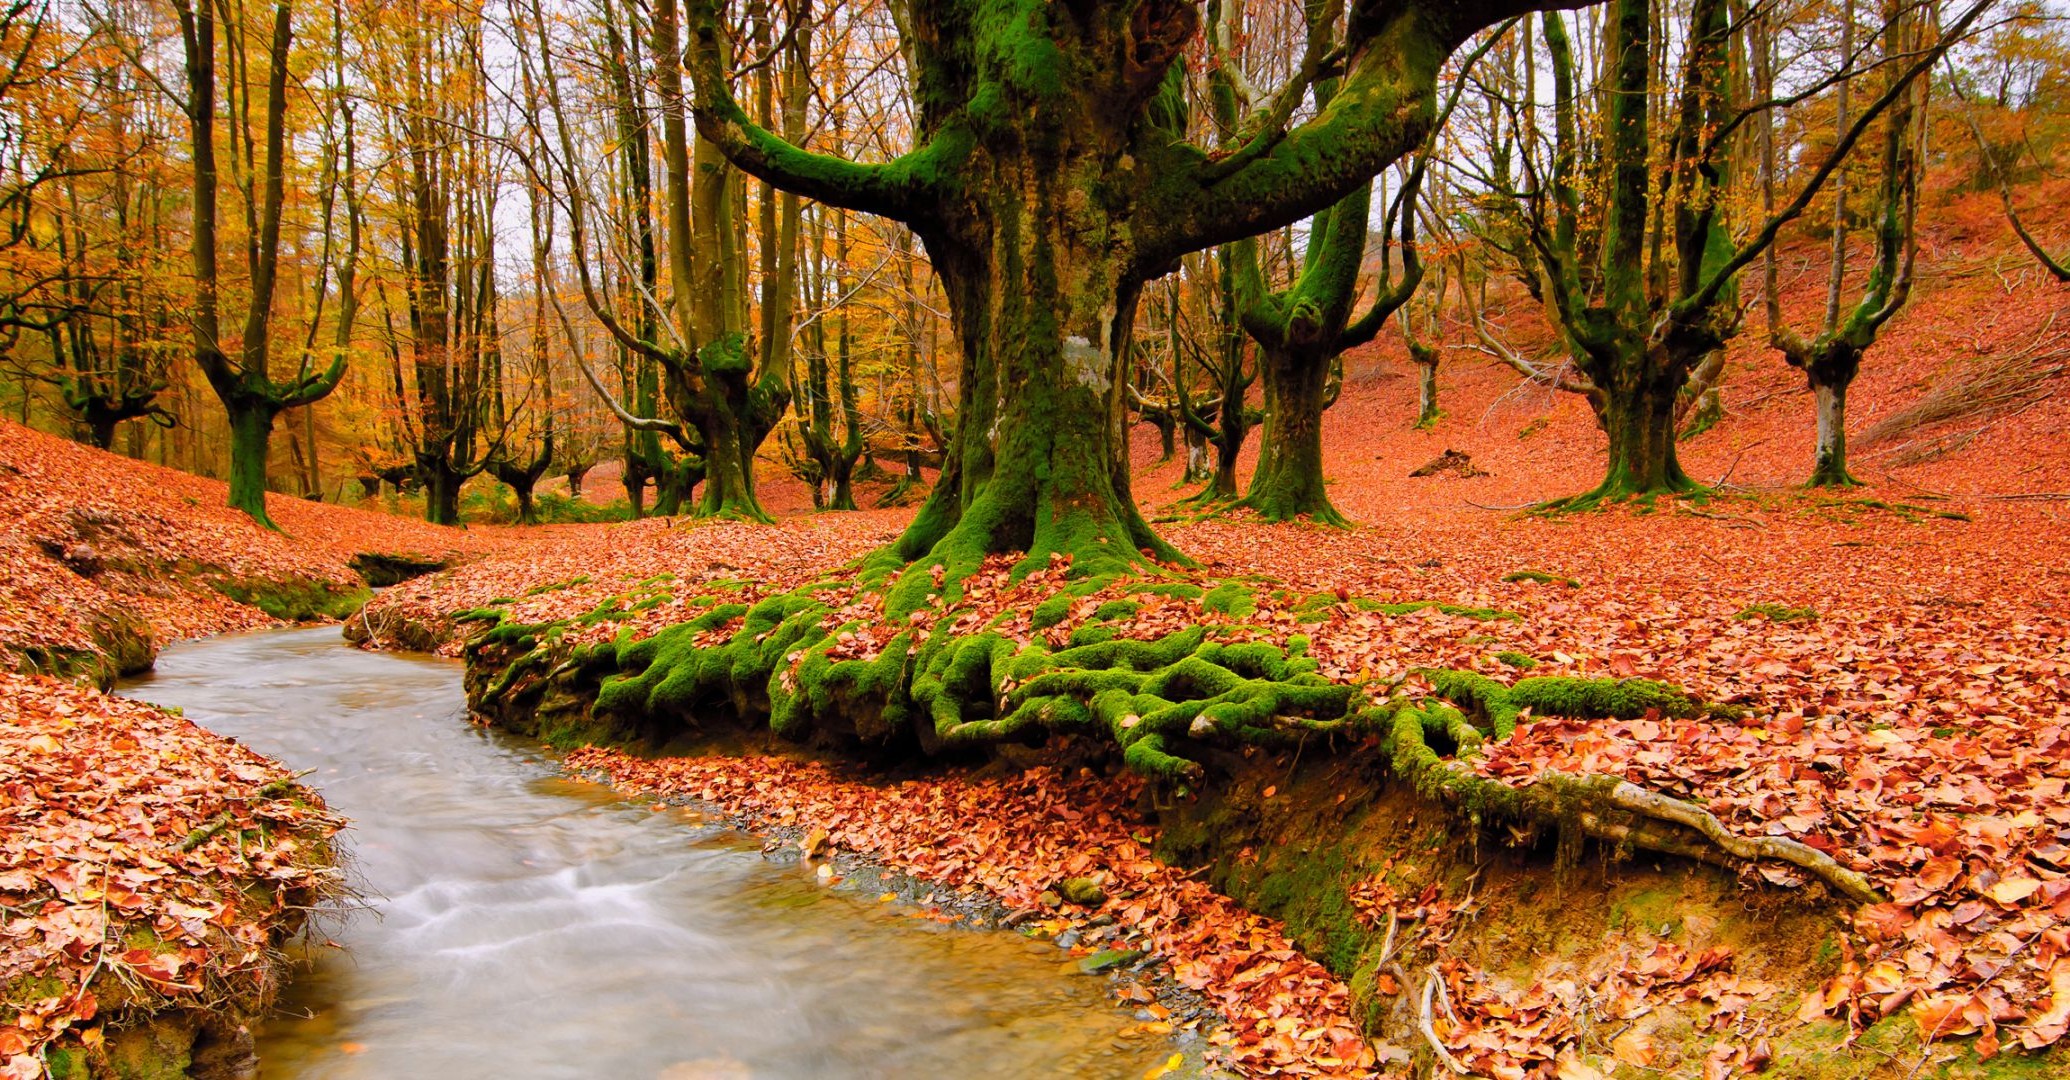 реки пруды и ручьи прудов и ручьев осень дерево древесины природа лист парк пейзаж сезон на открытом воздухе среды живописный рассвет хорошую погоду бук пейзажи